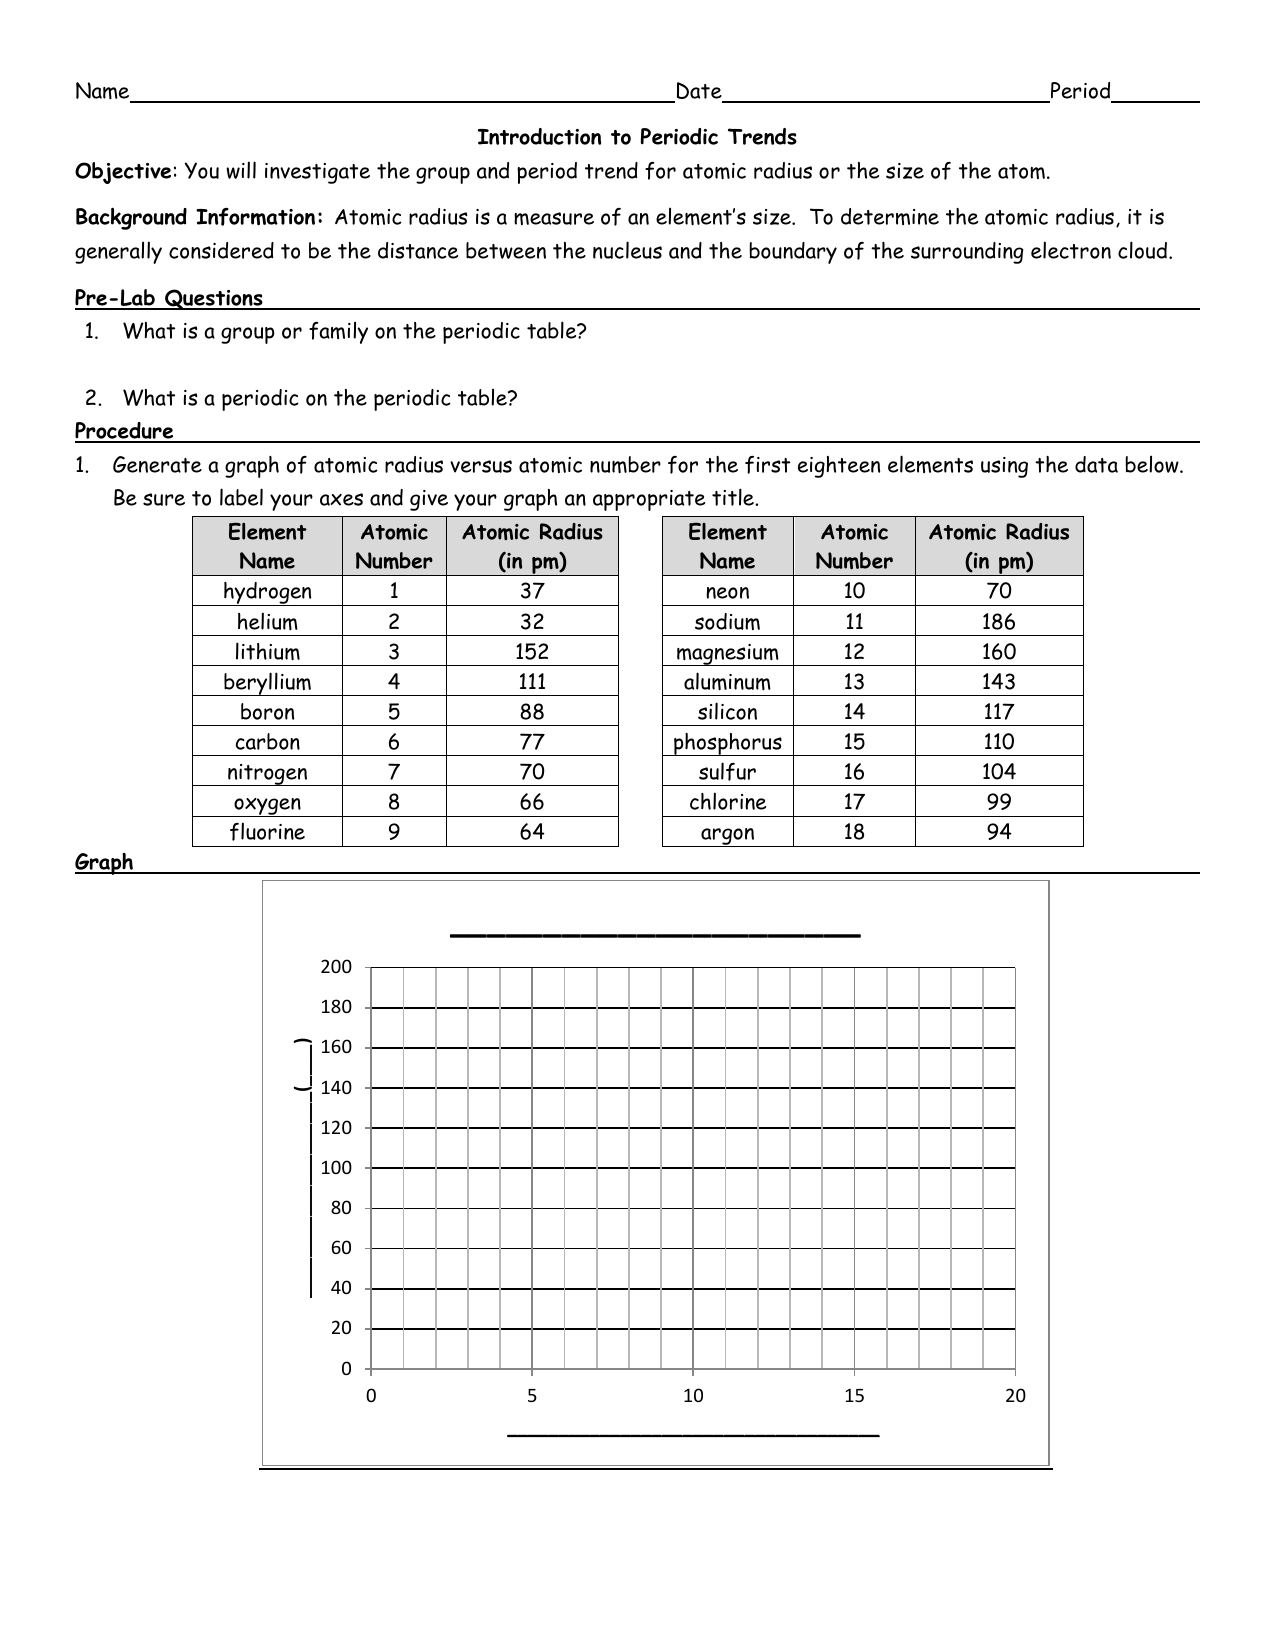 Atomic Radius Vs Atomic Number Worksheet